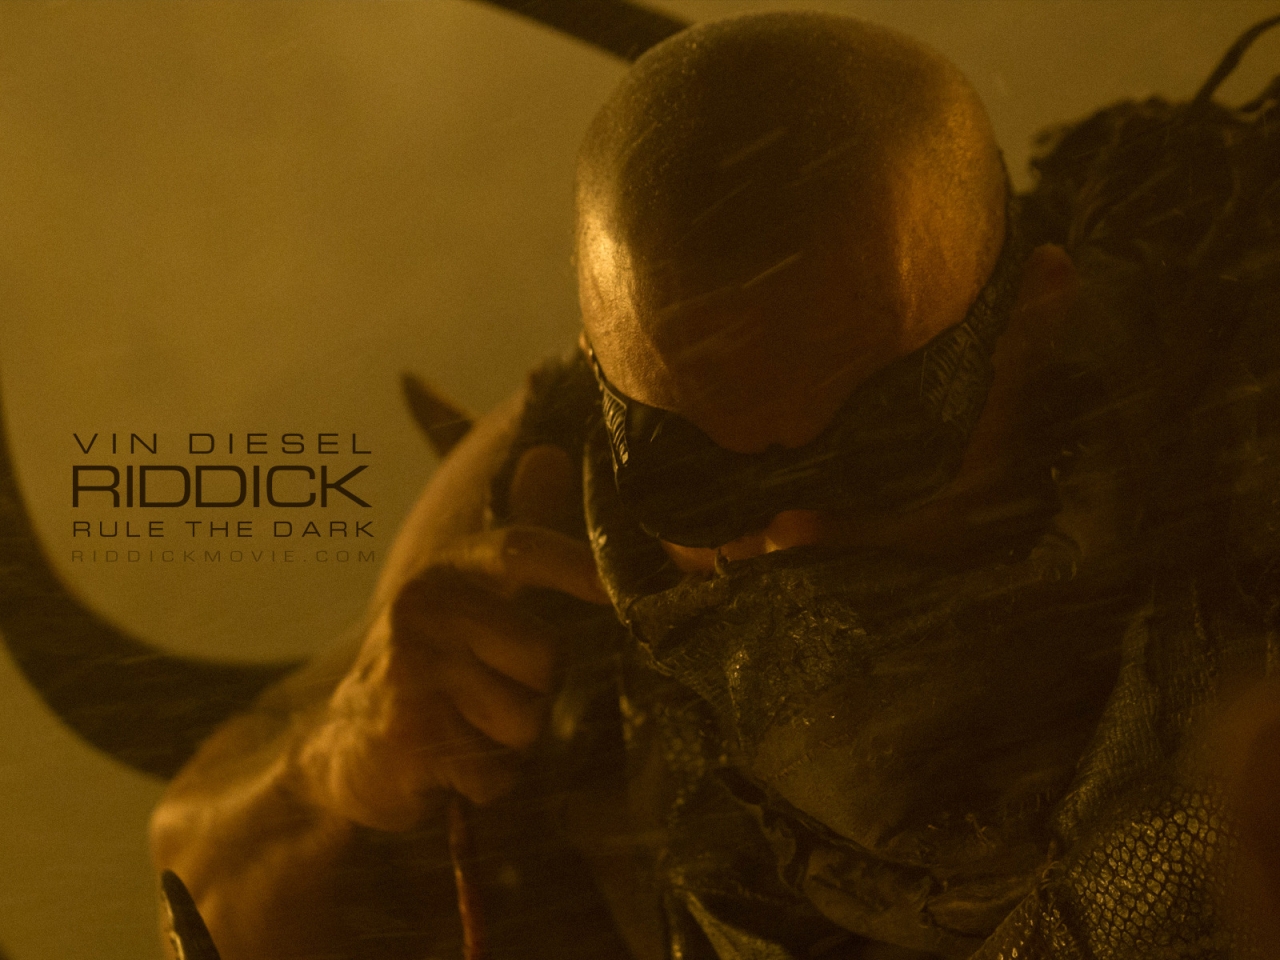 Vin Diesel Riddick for 1280 x 960 resolution